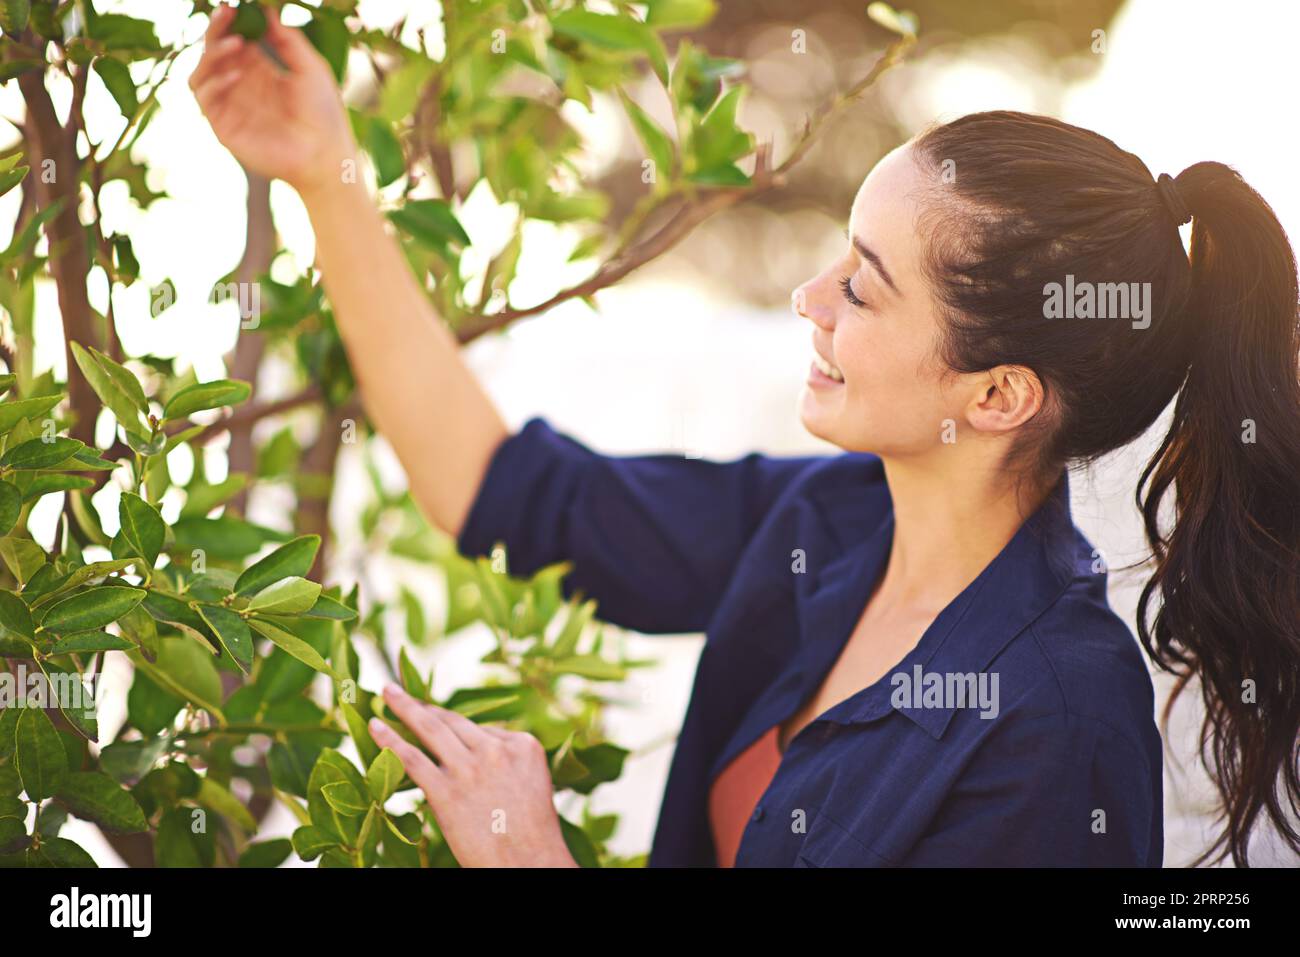 Aus kleinen Samen wachsen mächtige Bäume. Eine junge Frau inspiziert die Blätter ihres Baumes. Stockfoto